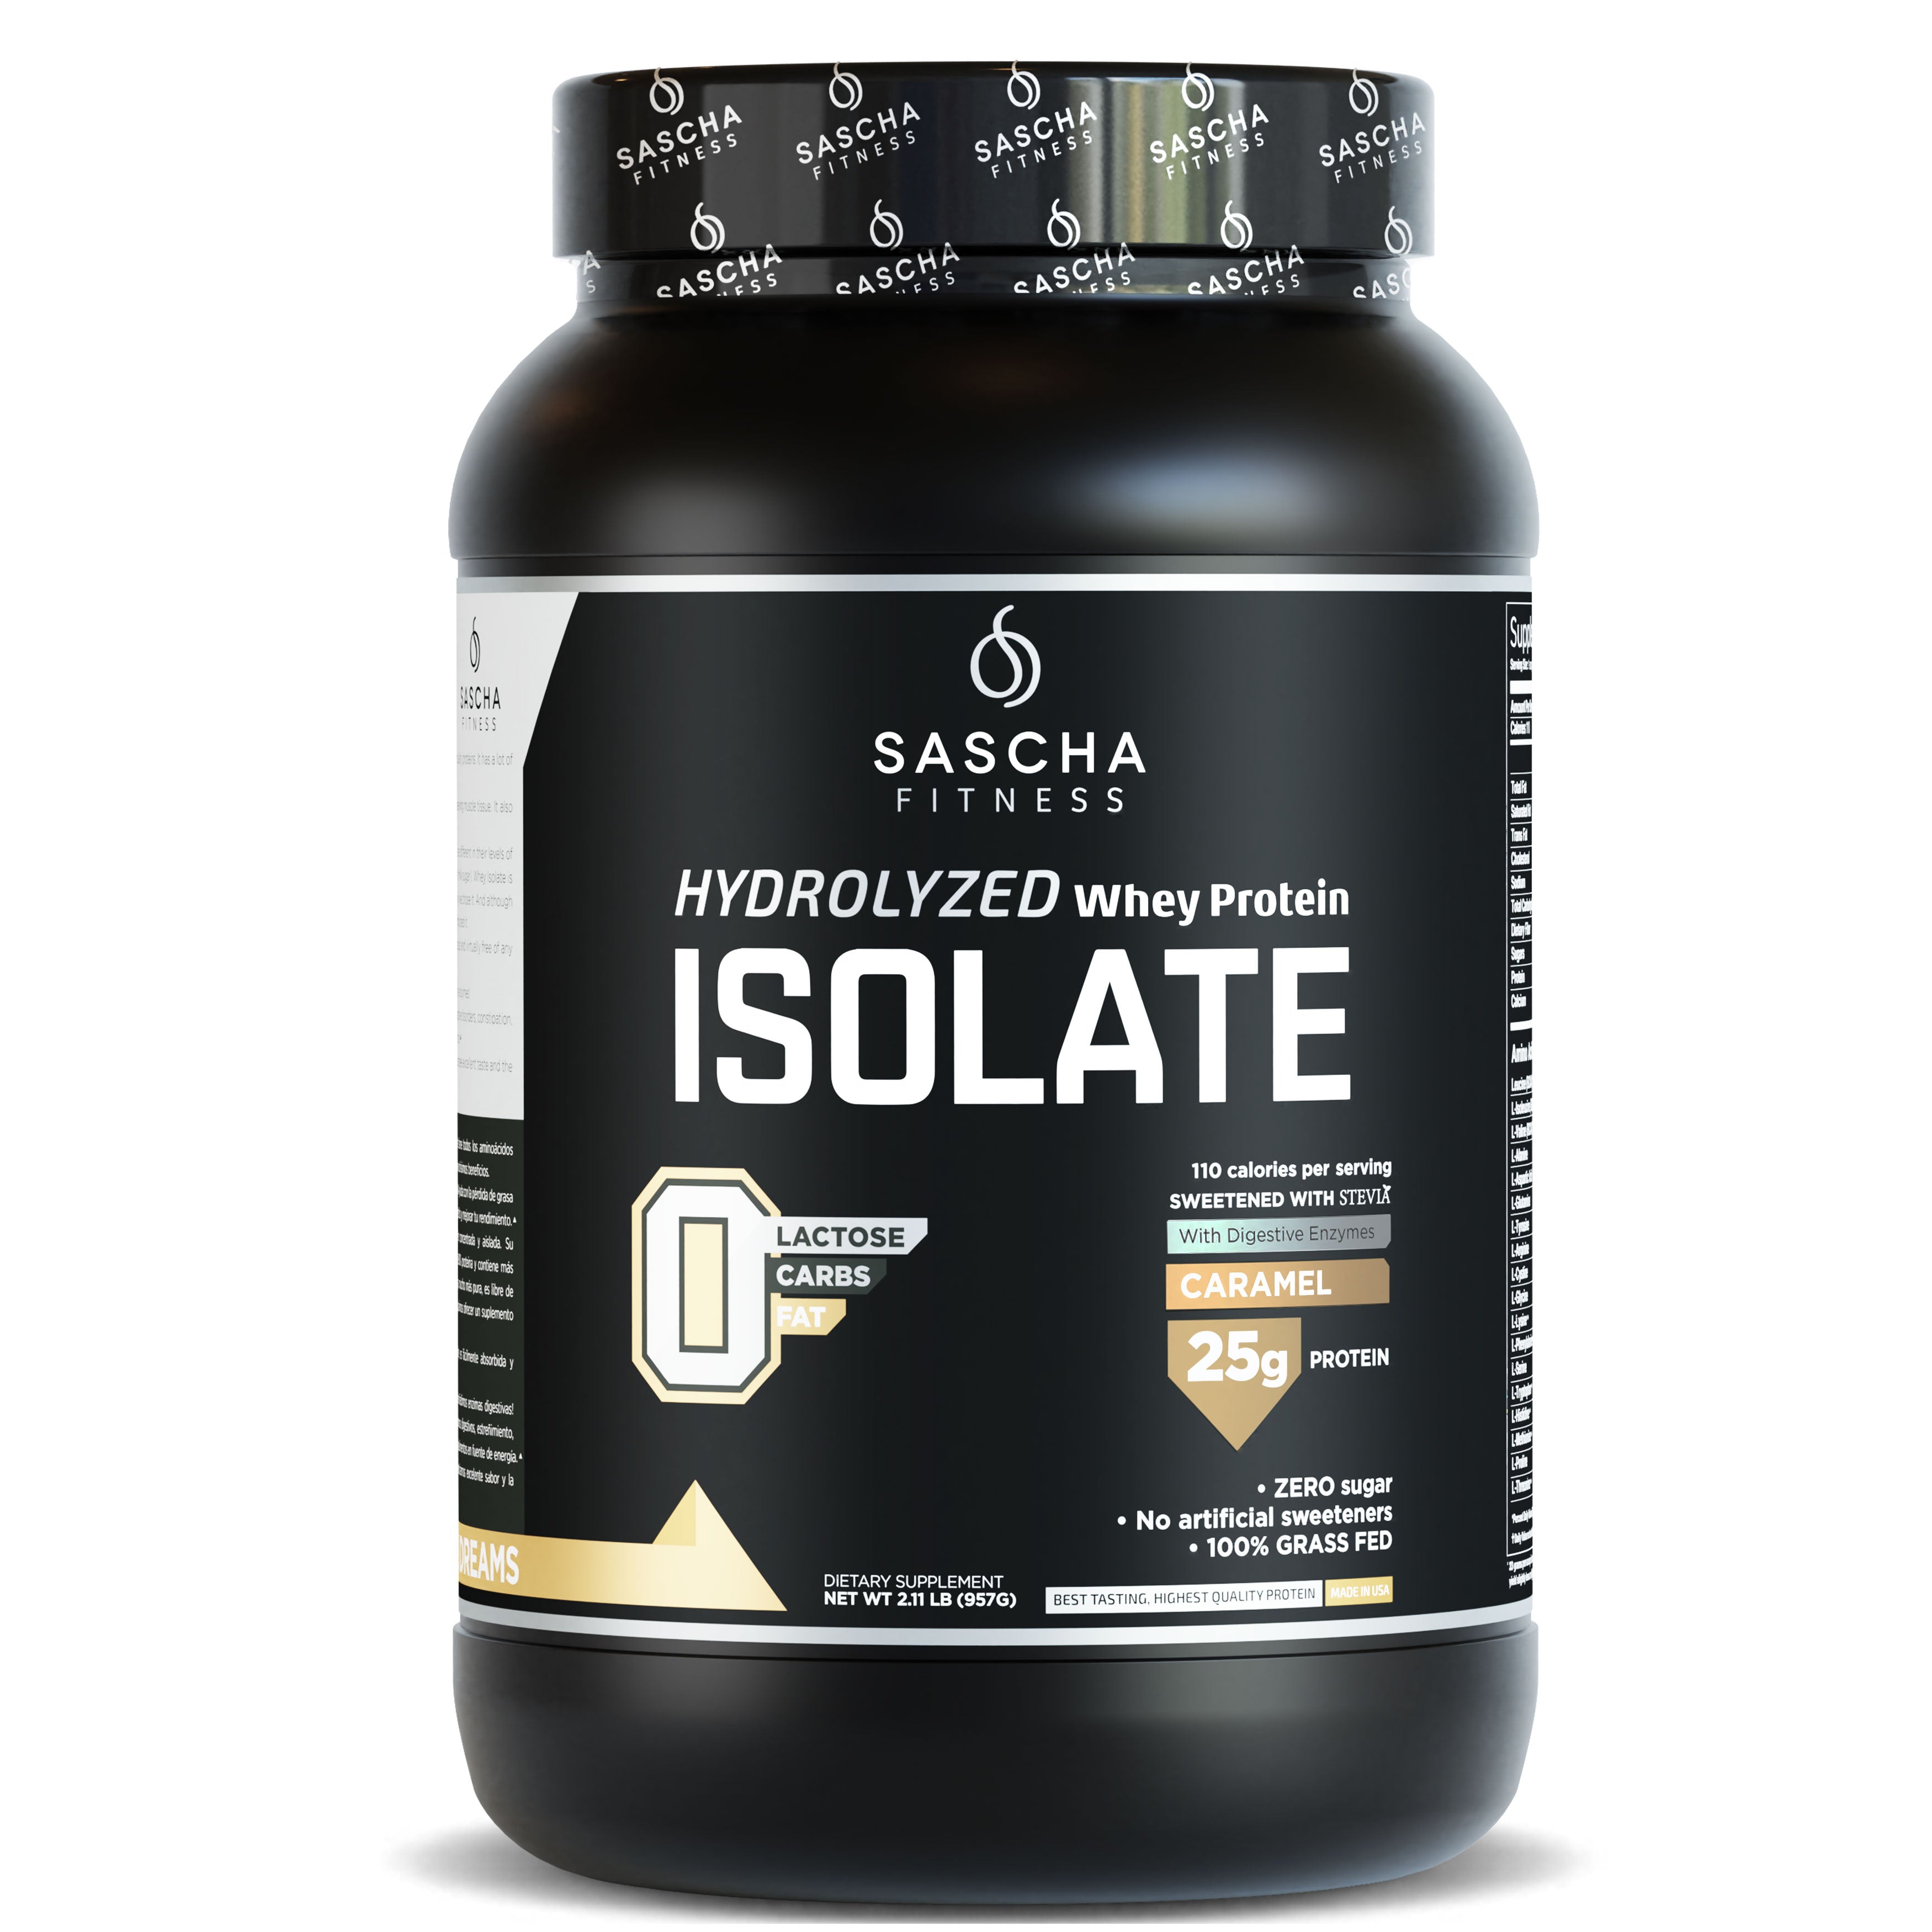 Sascha Fitness México - Hydrolyzed Whey Protein Isolate Caramel | Ganar Músculo